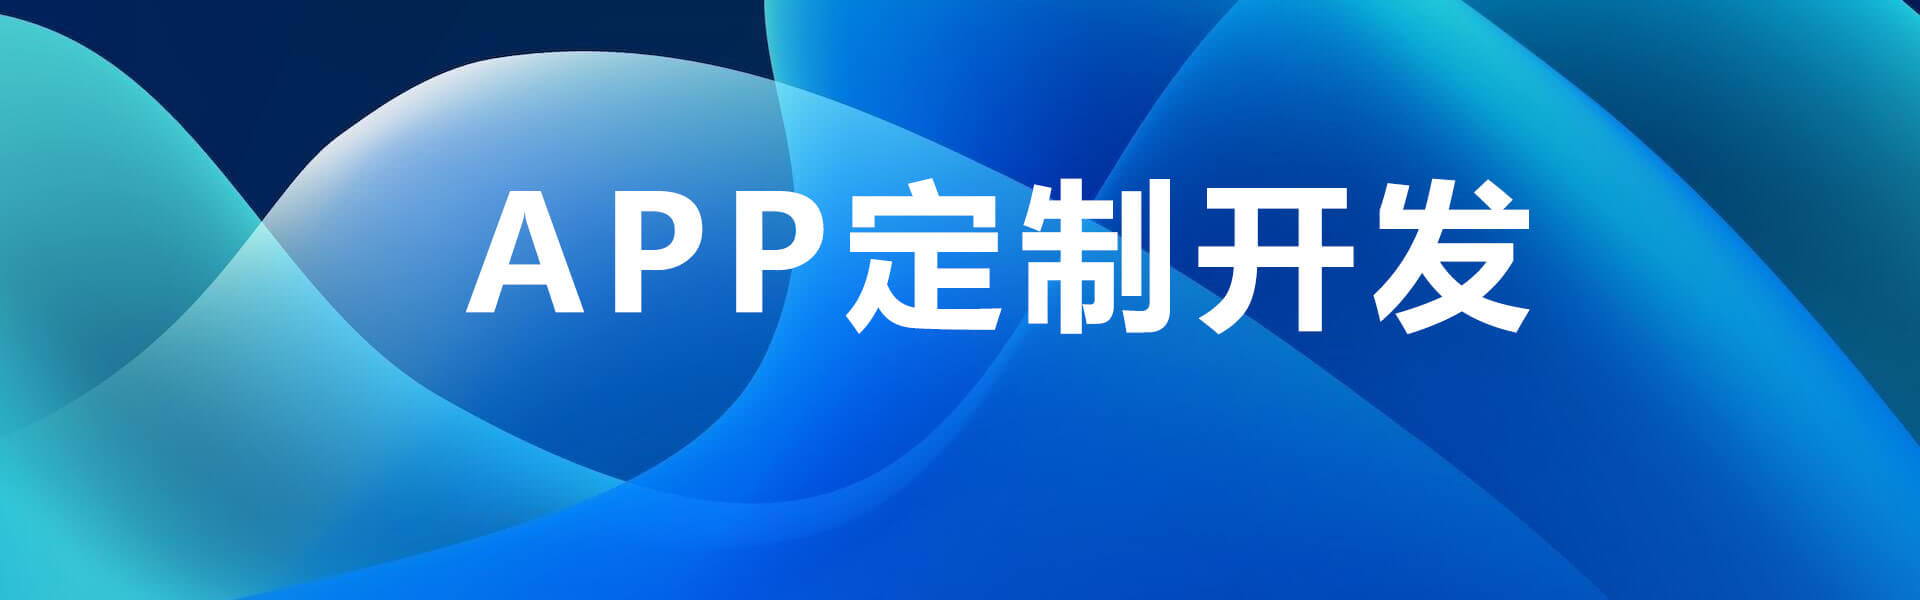 上海APP开发